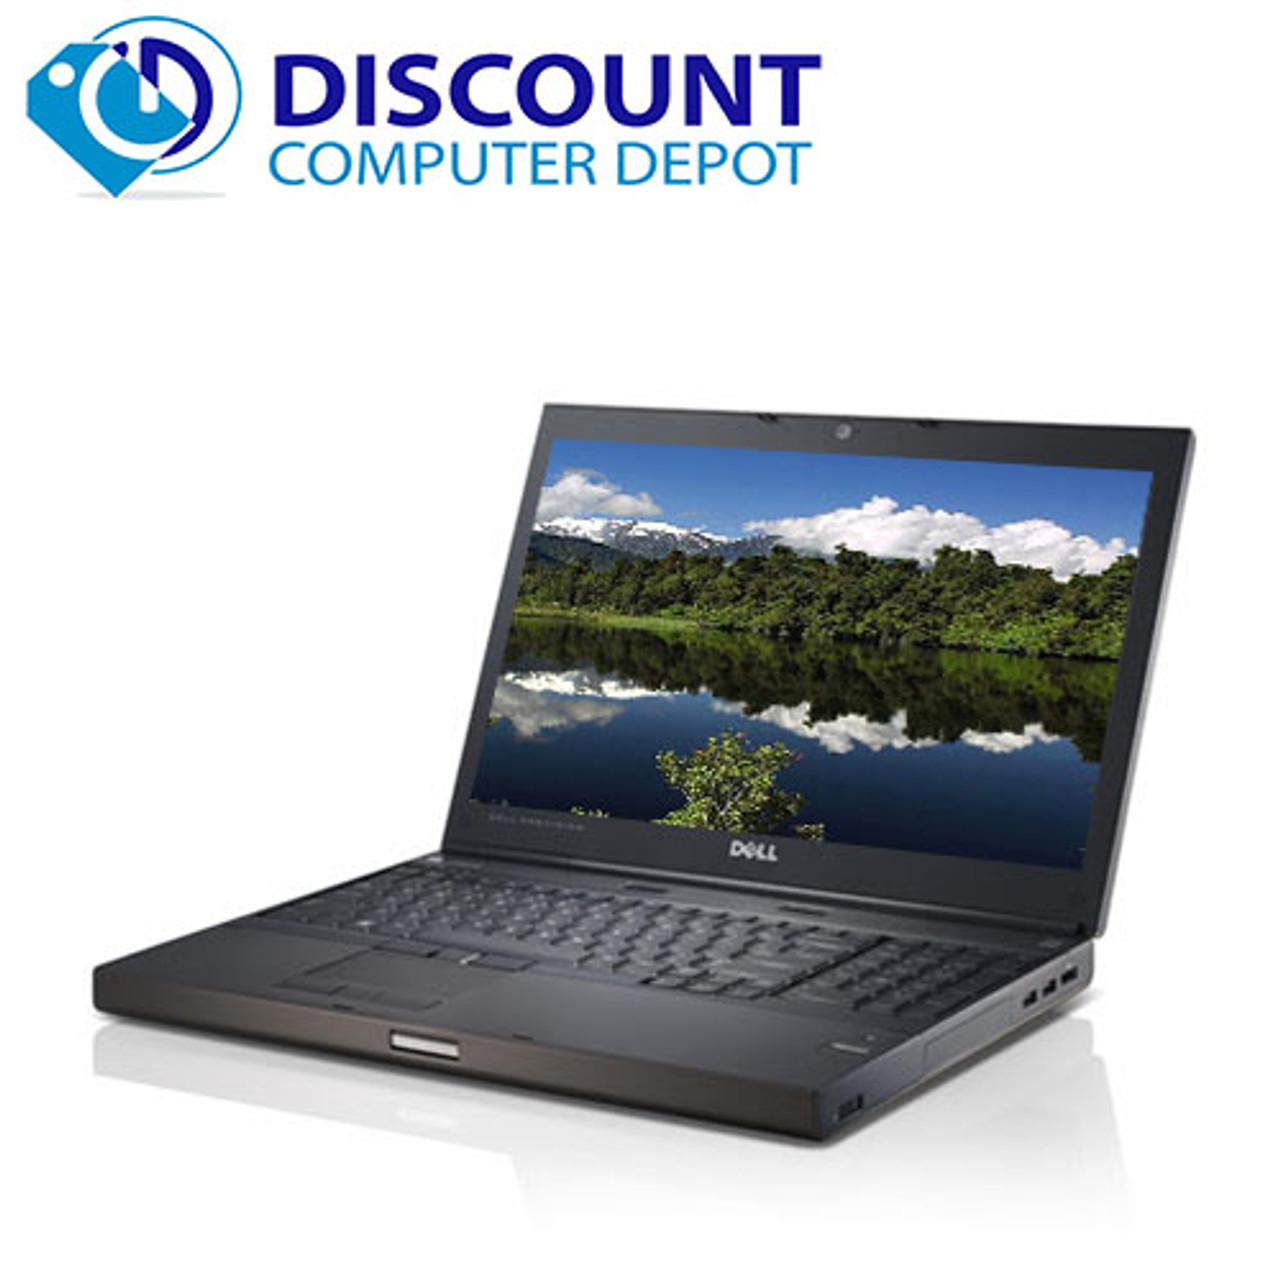 marts Ung dame løn Dell Precision M6600 Intel Core i7 17" Laptop Computer Windows 10 Pro PC  16GB 1TB HDD Nvidia Quadro 4000M and WIFI DVD